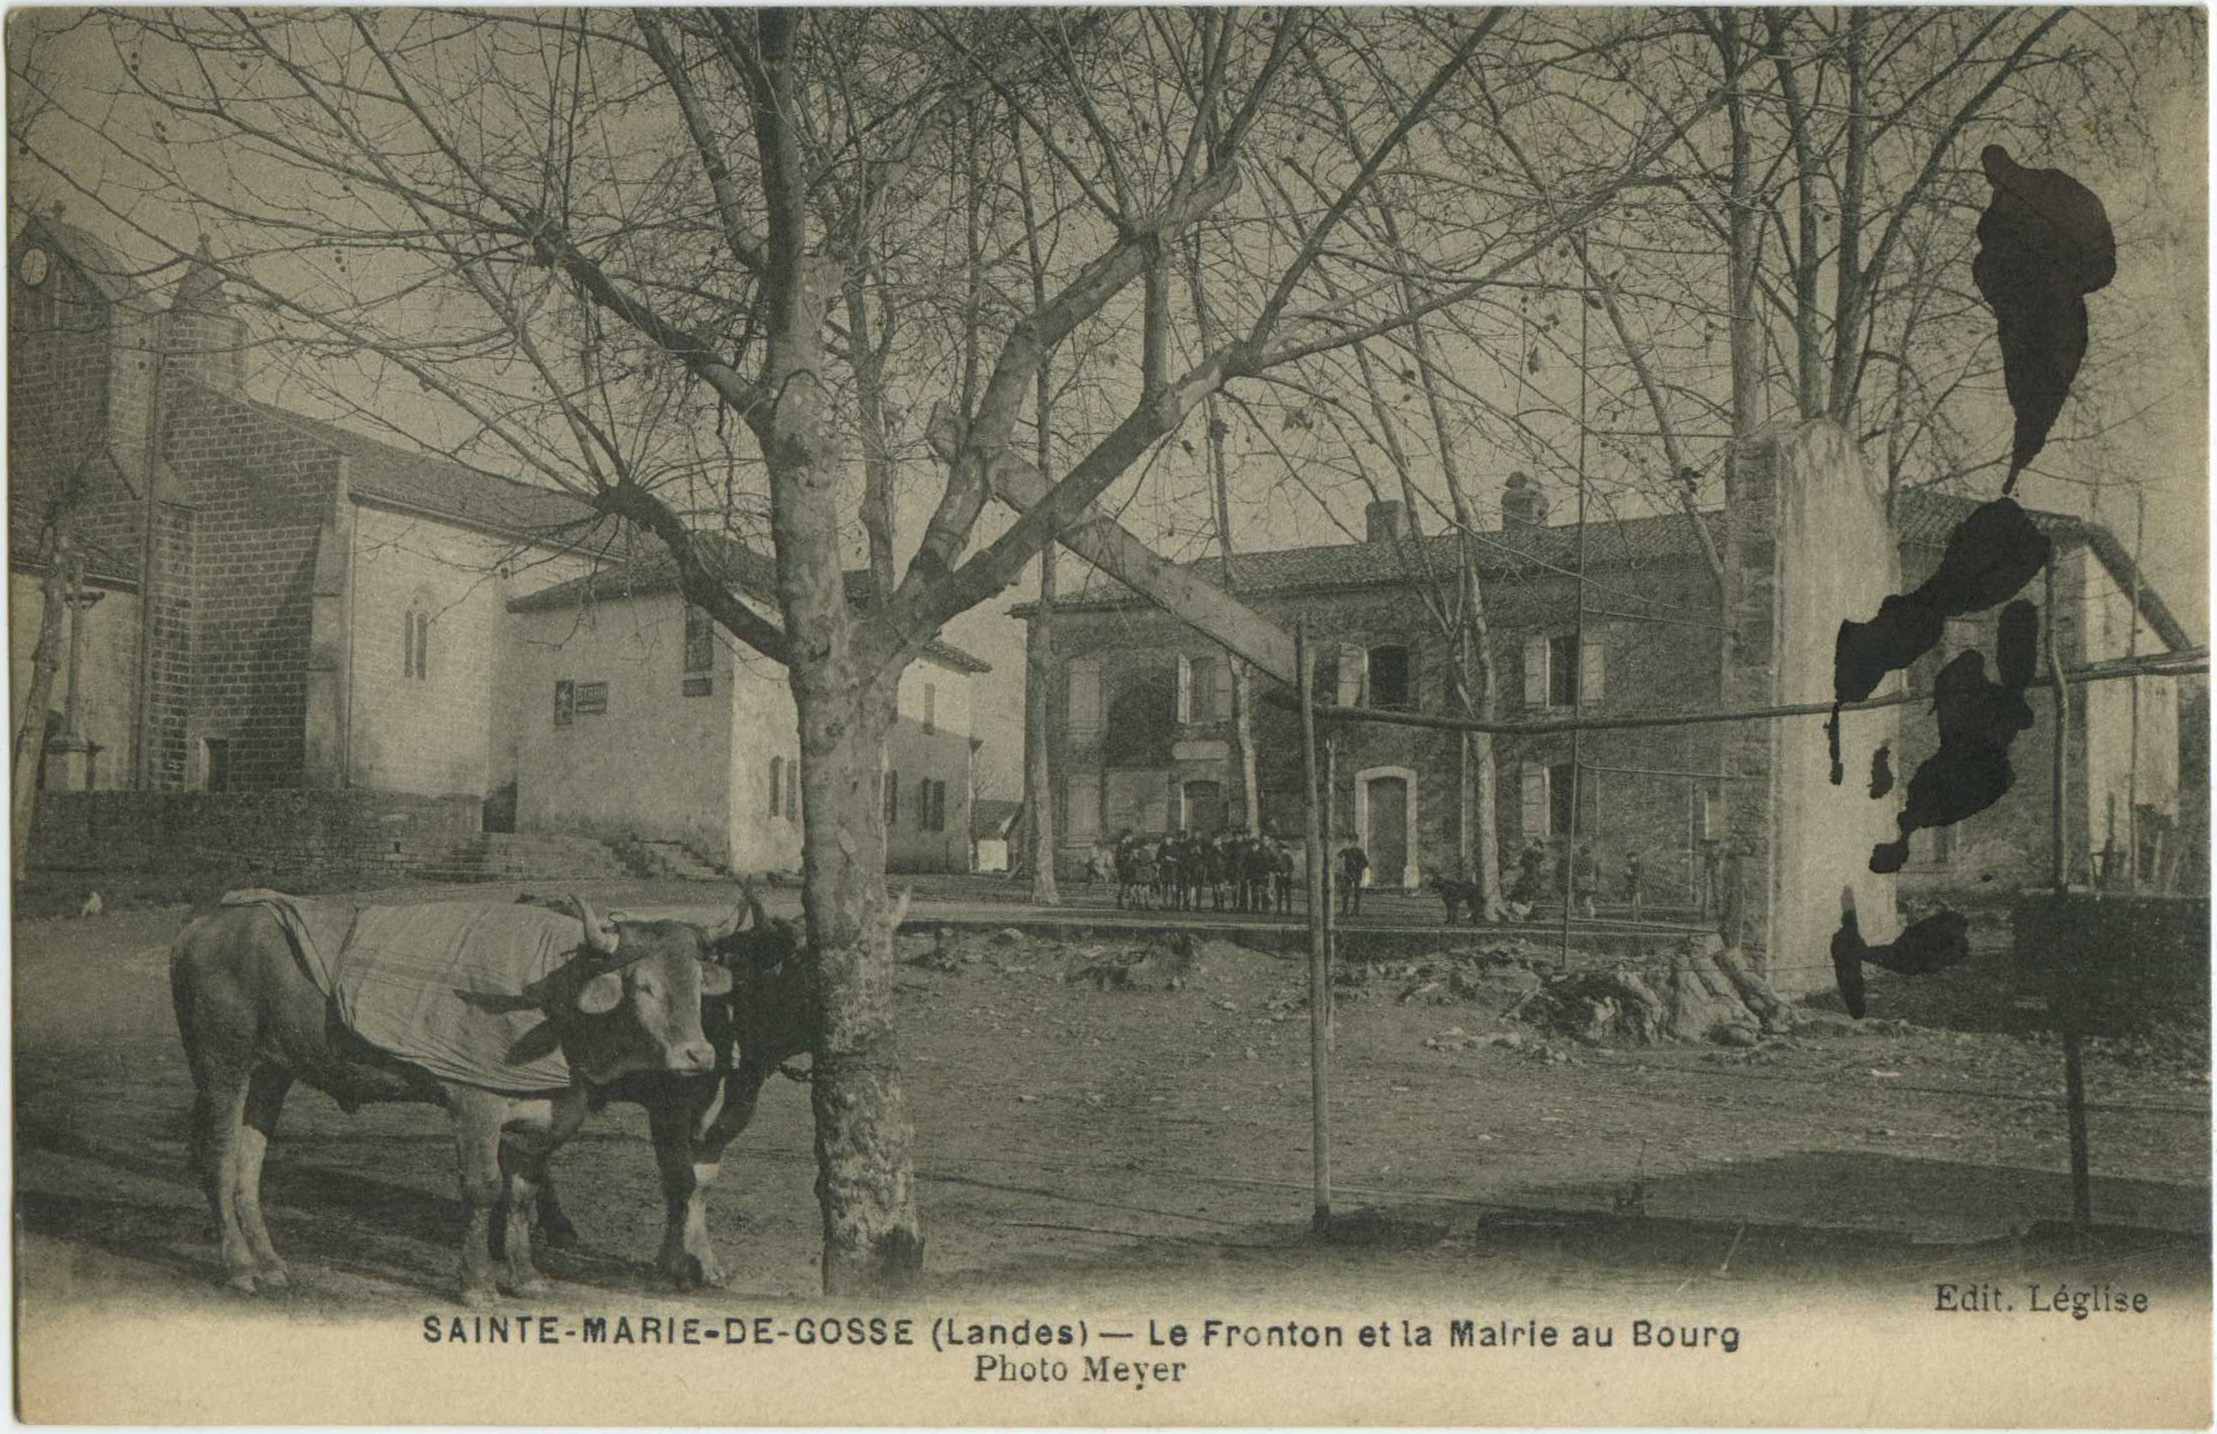 Sainte-Marie-de-Gosse - Le Fronton et la Mairie au Bourg